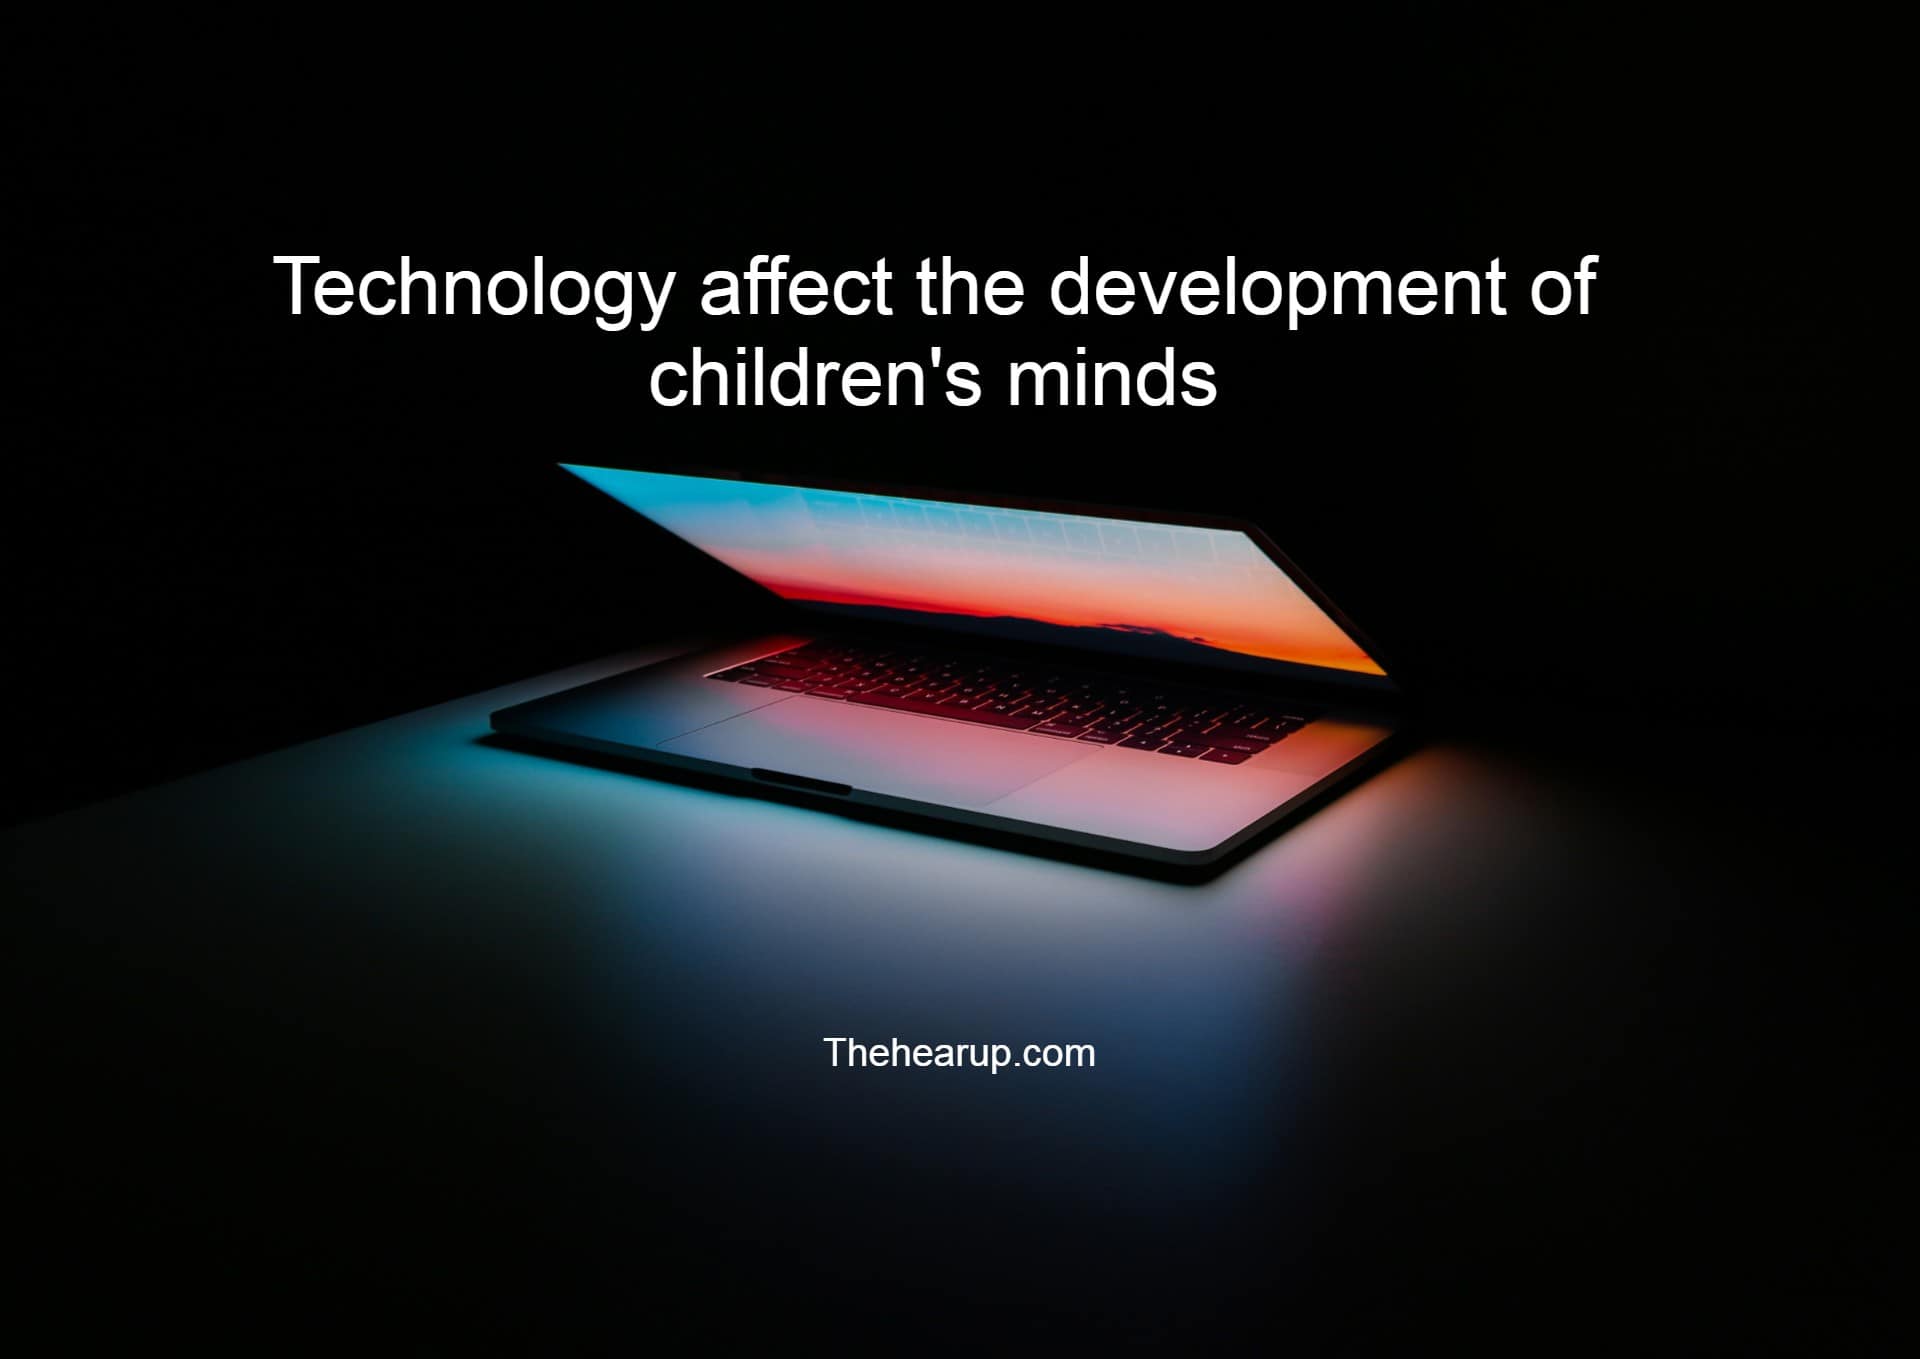 technology affect the development of children's minds